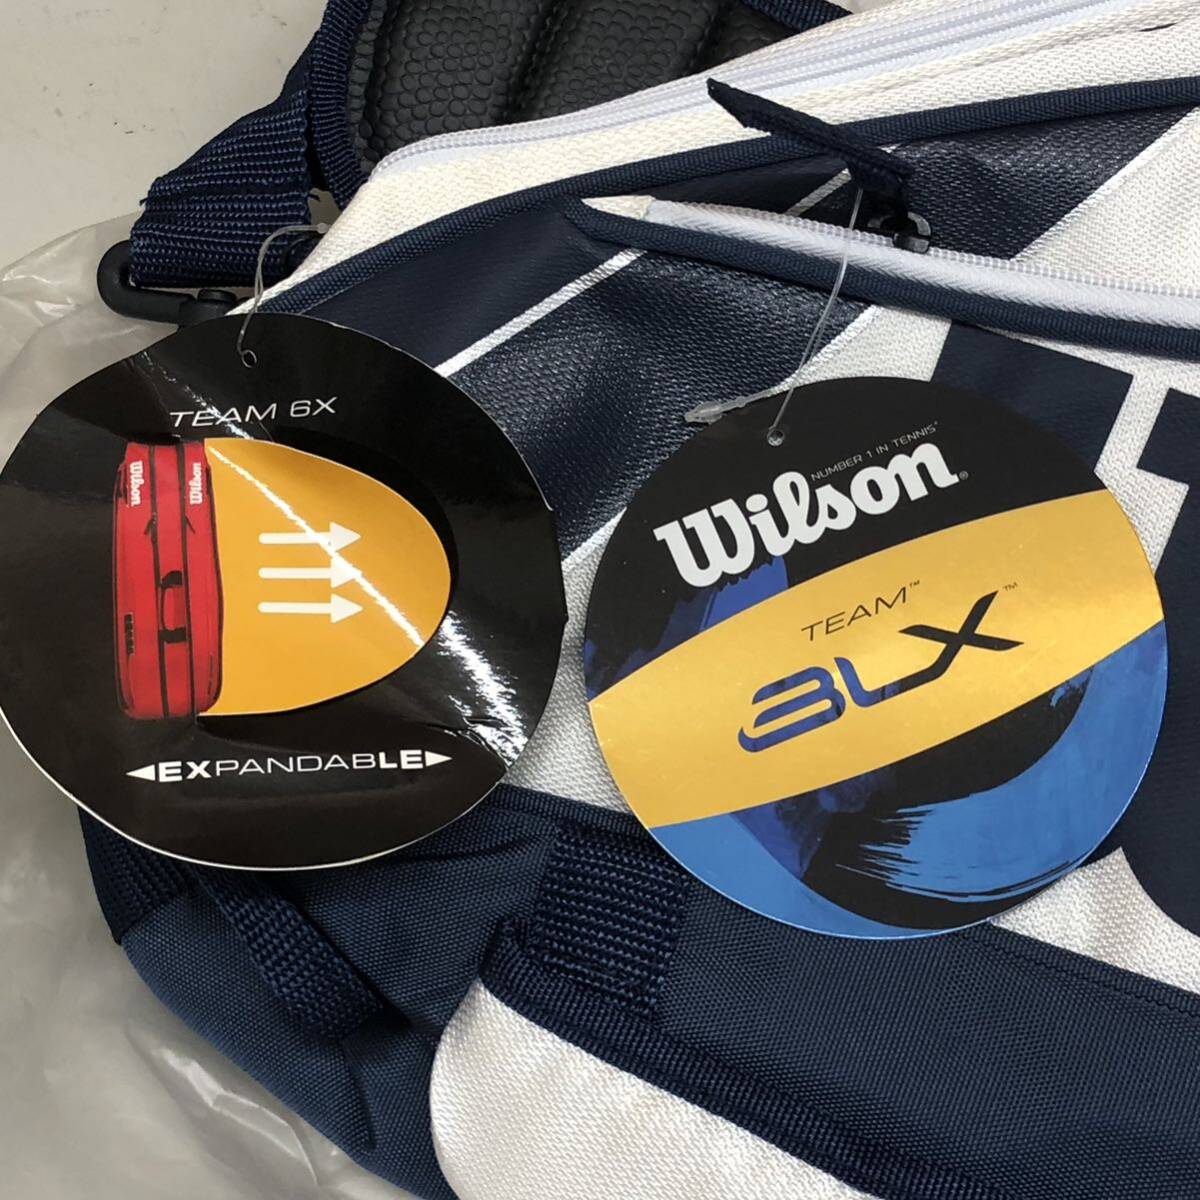 15 Wilson BLX TEAM white navy blue racket bag used unused long-term keeping goods tennis tennis bag racket 